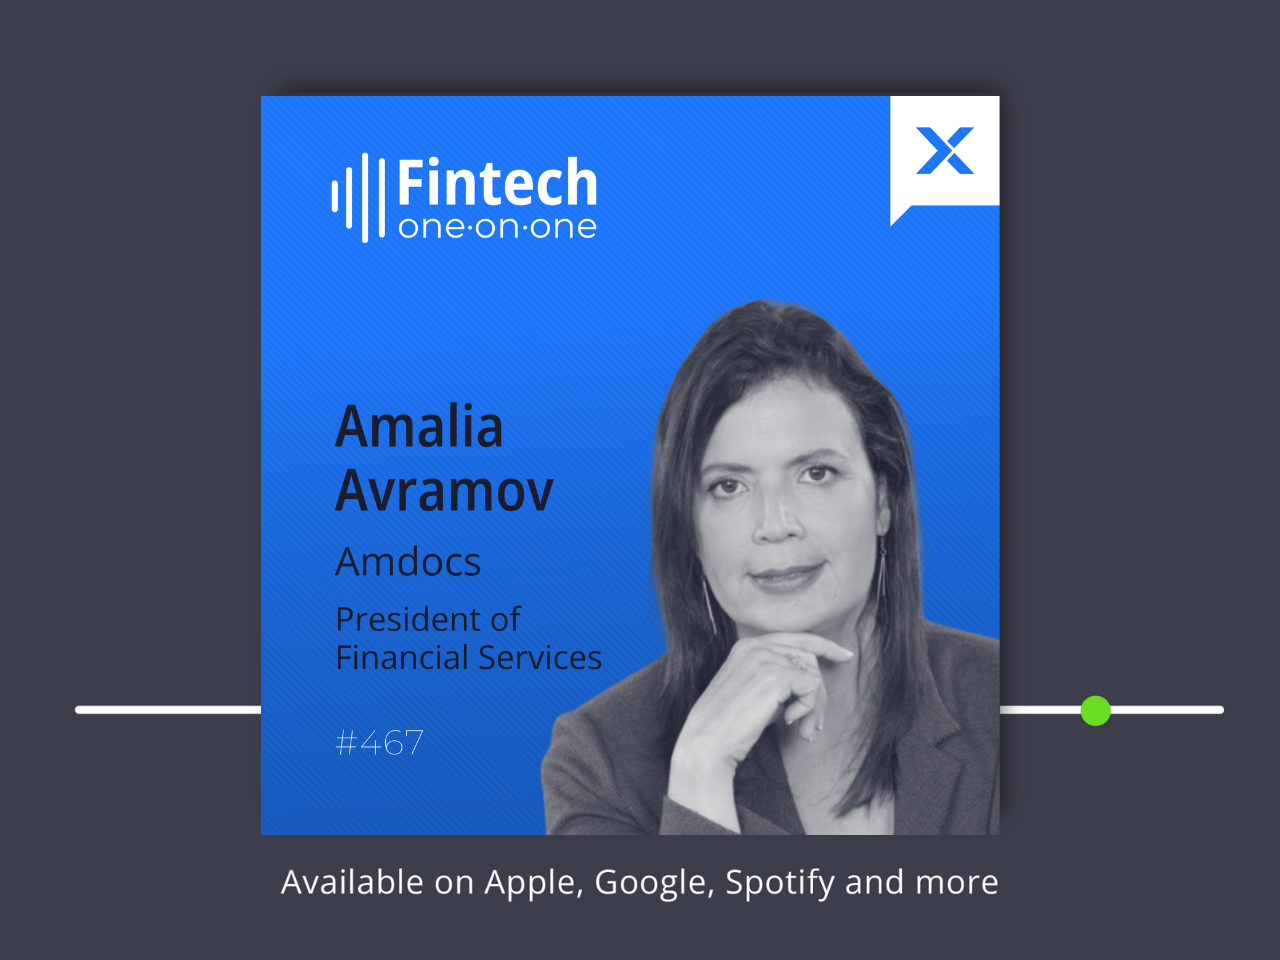 أماليا أفراموف، رئيس الخدمات المالية، Amdocs